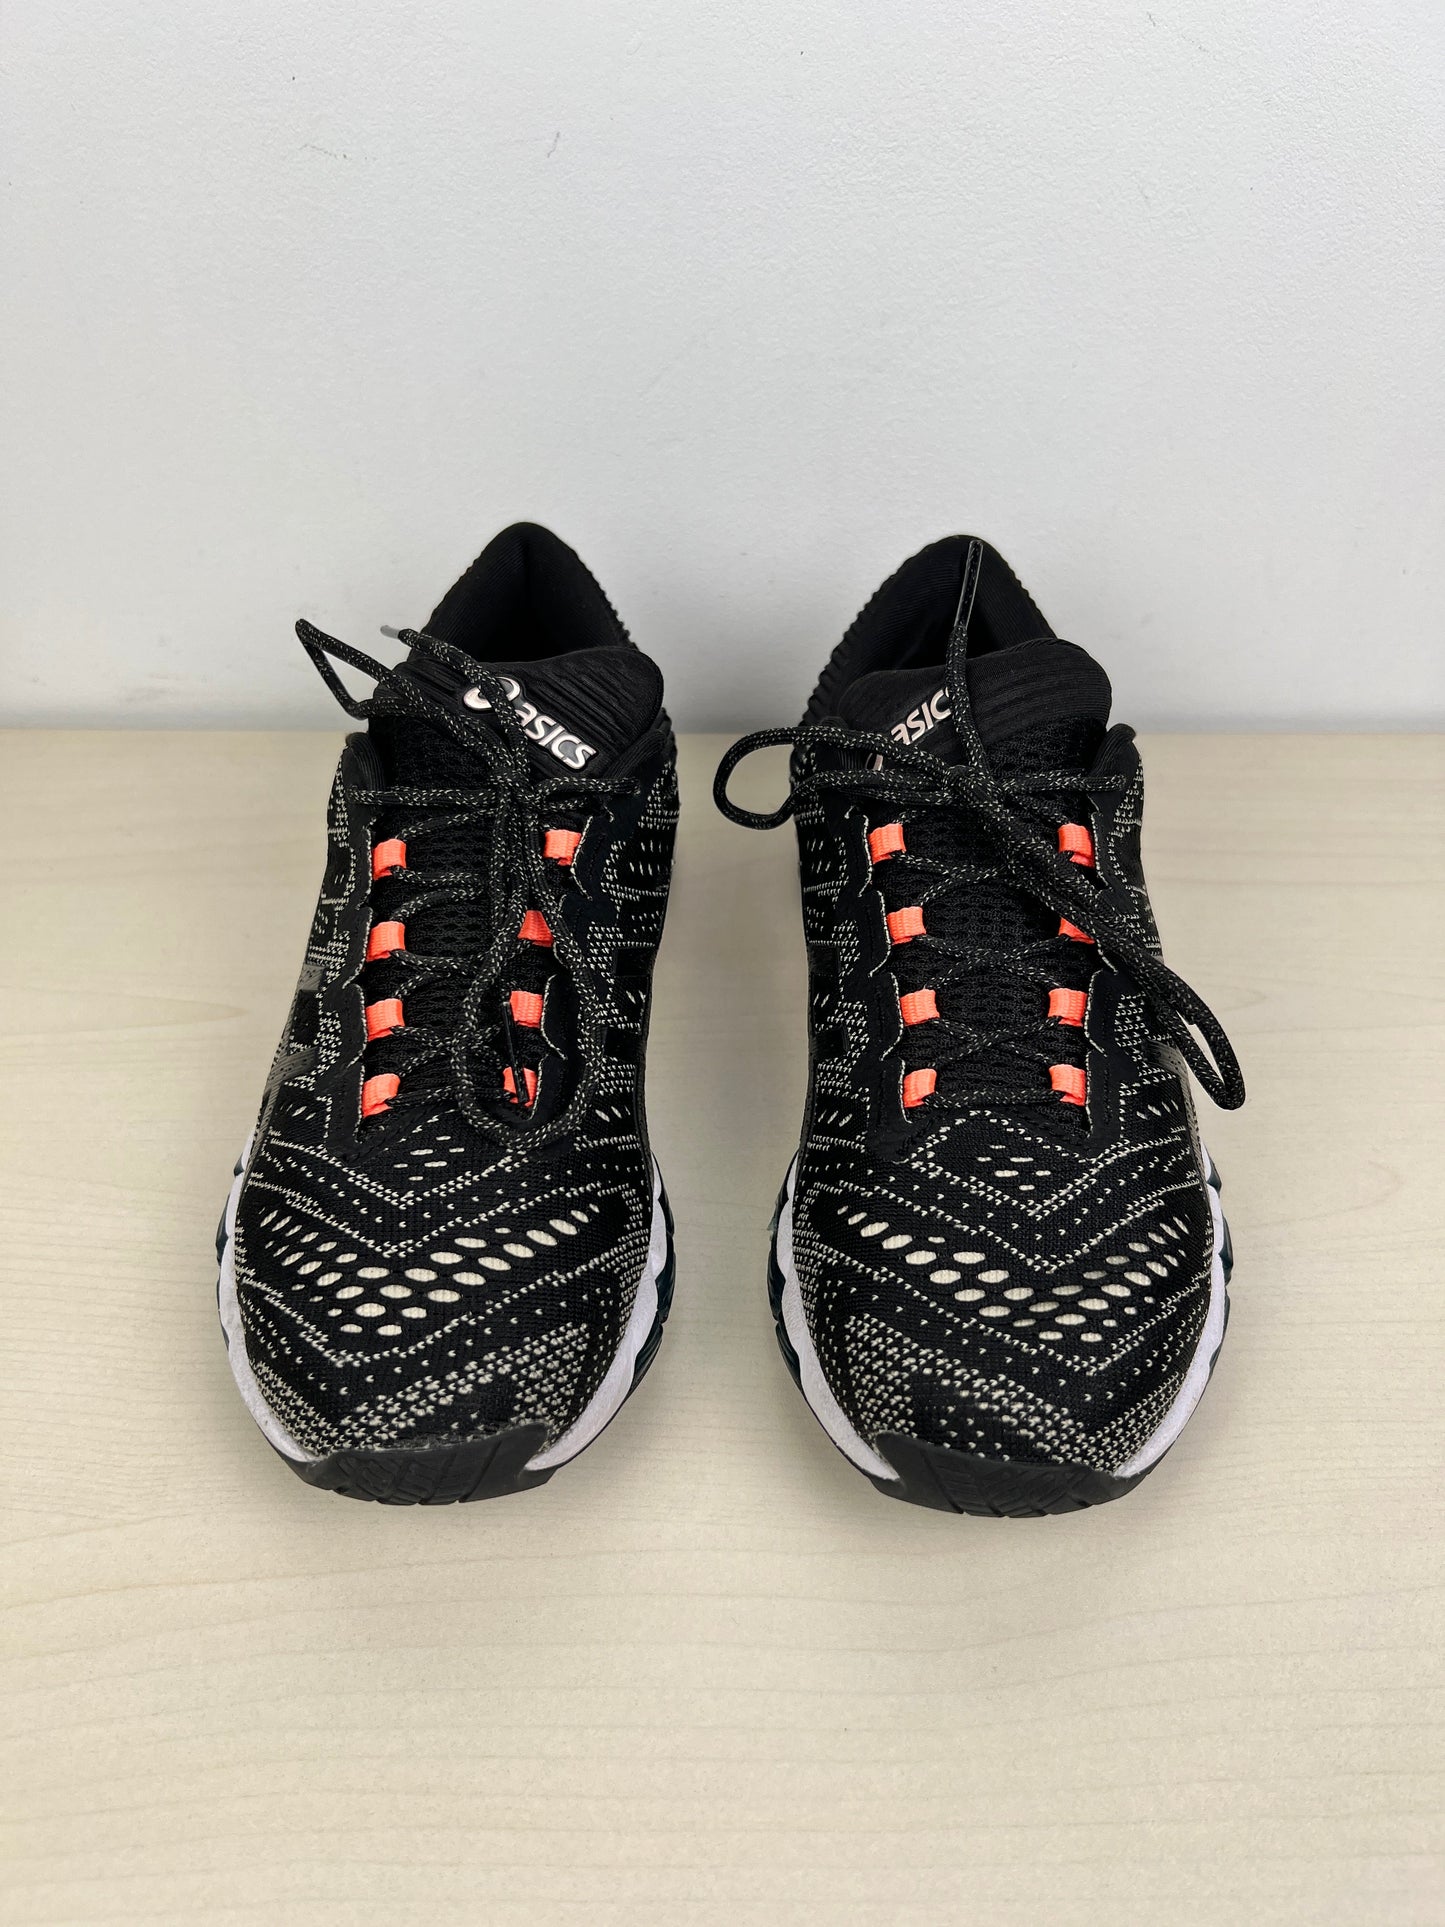 Black Shoes Athletic Asics, Size 6.5